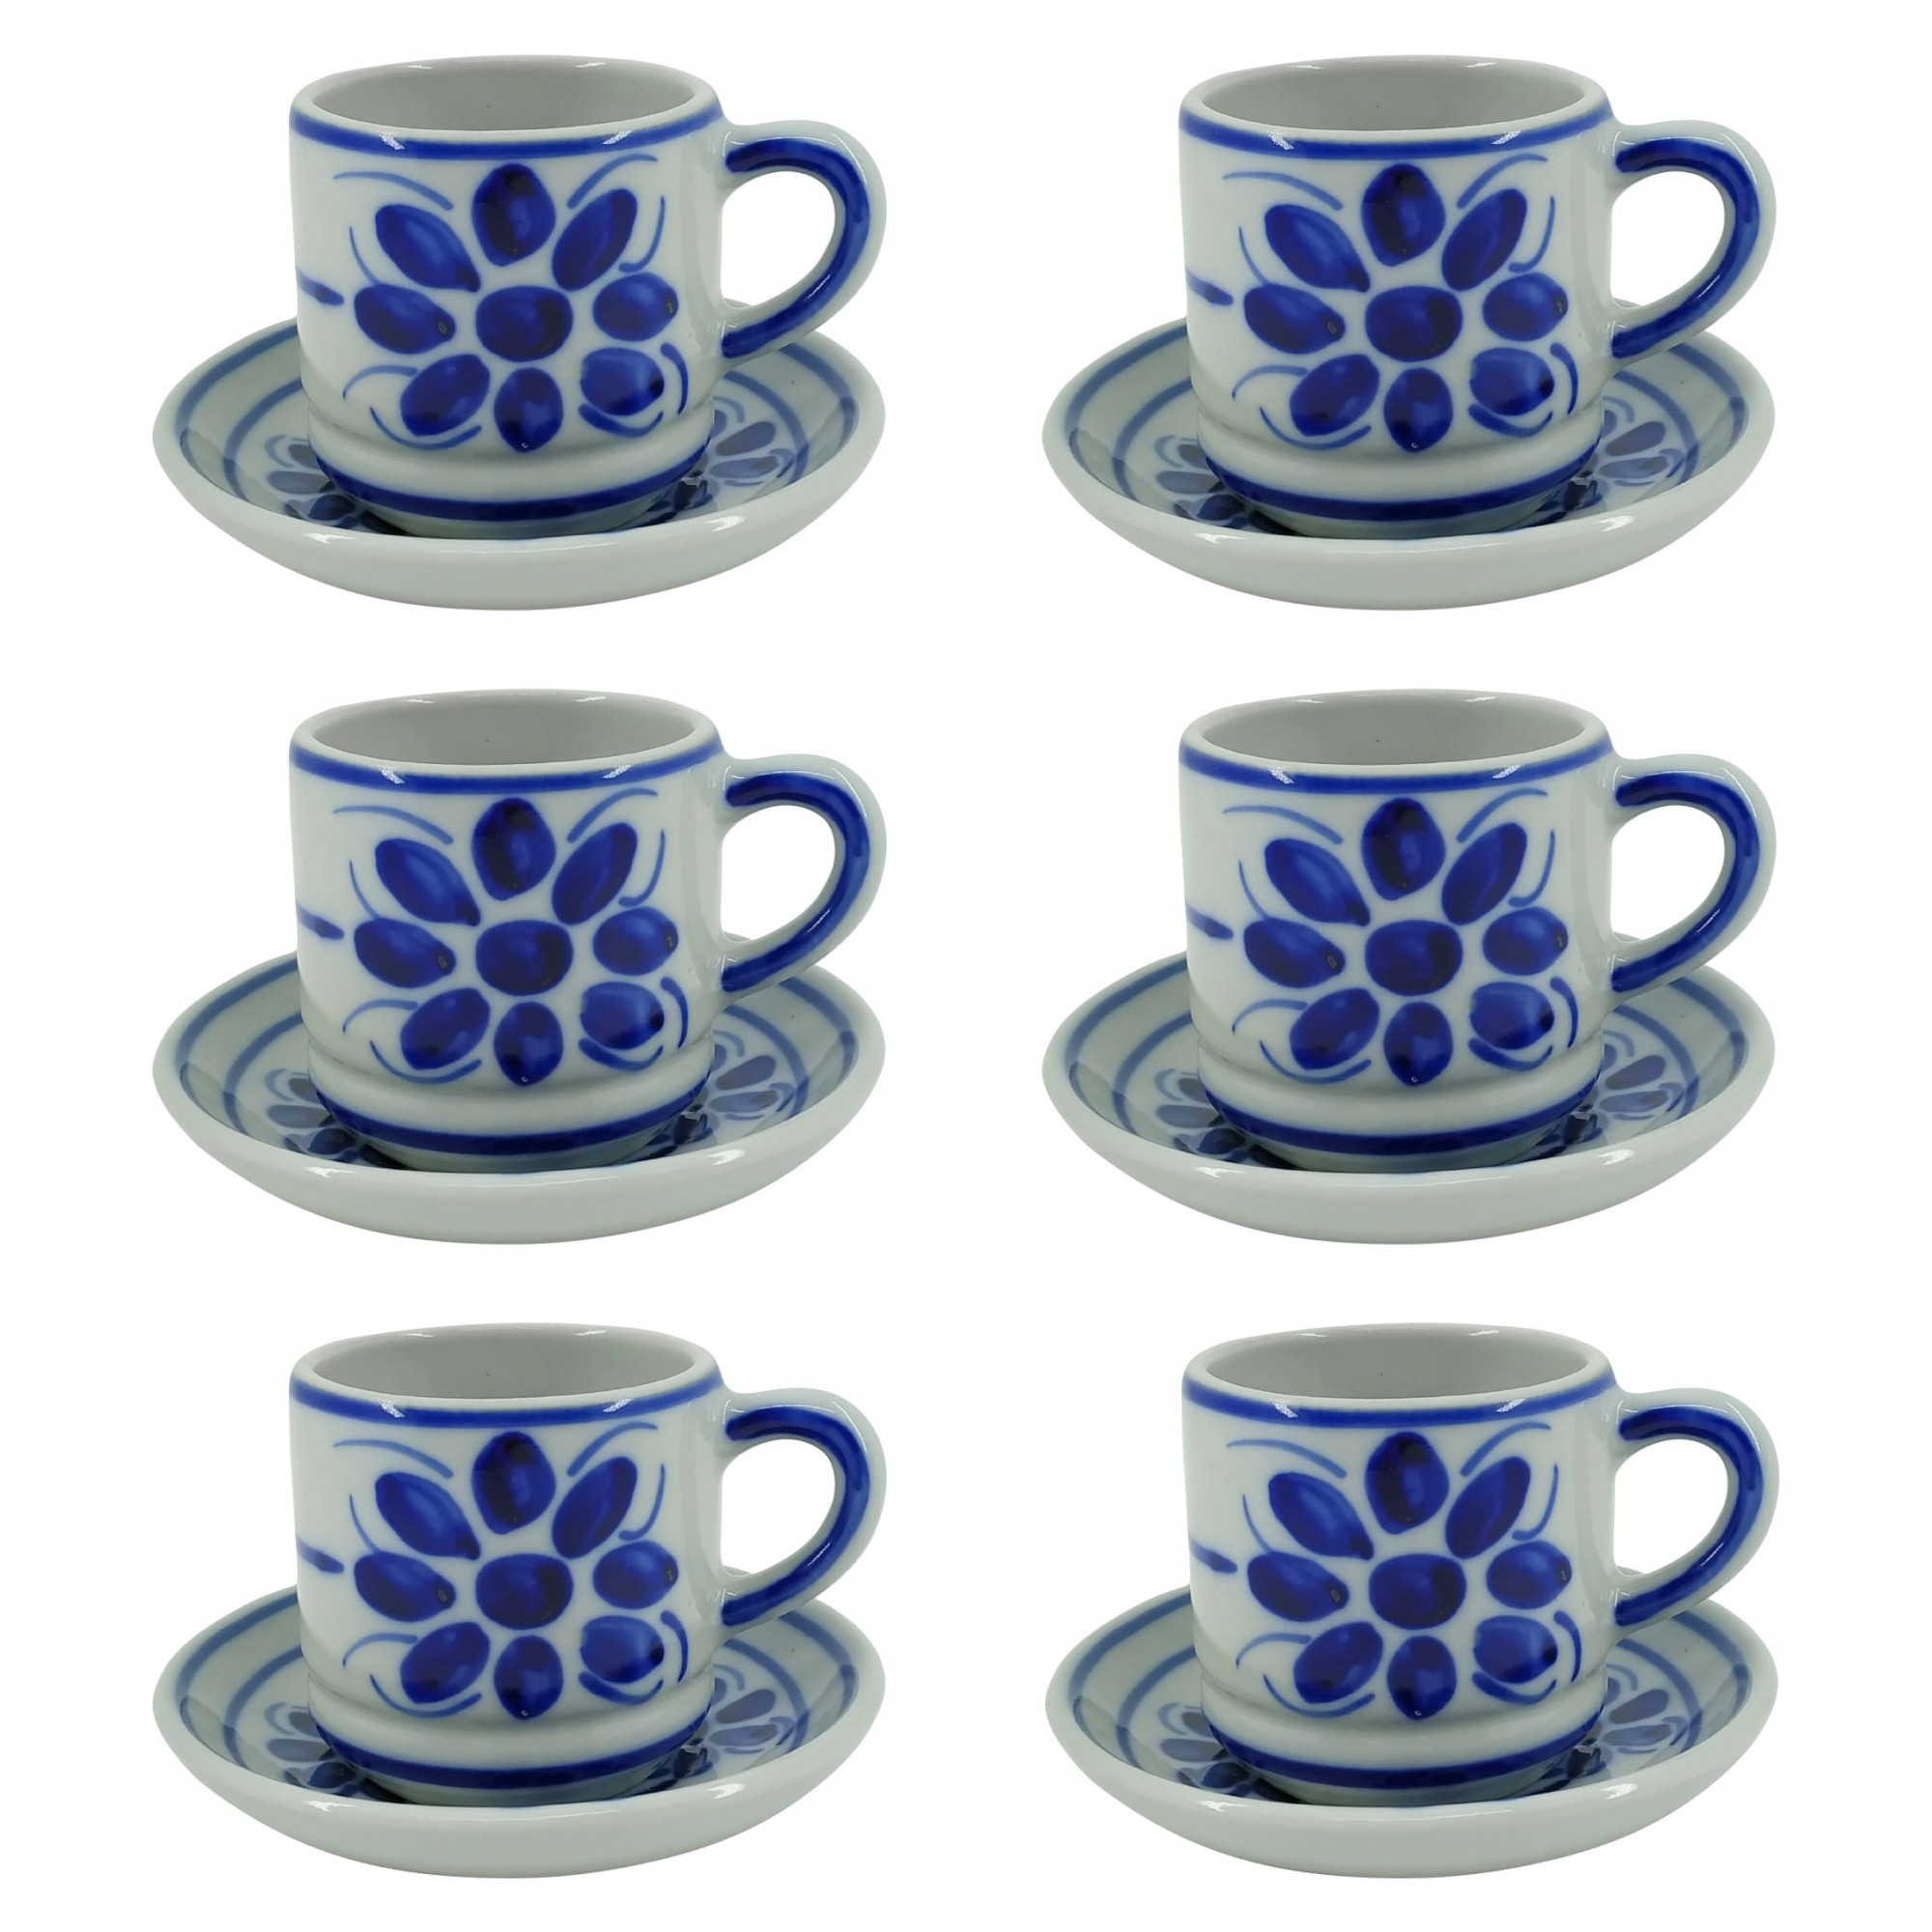 Jogo de 6 Xícaras de Chá e Pires em Porcelana Azul Floral 200 ml